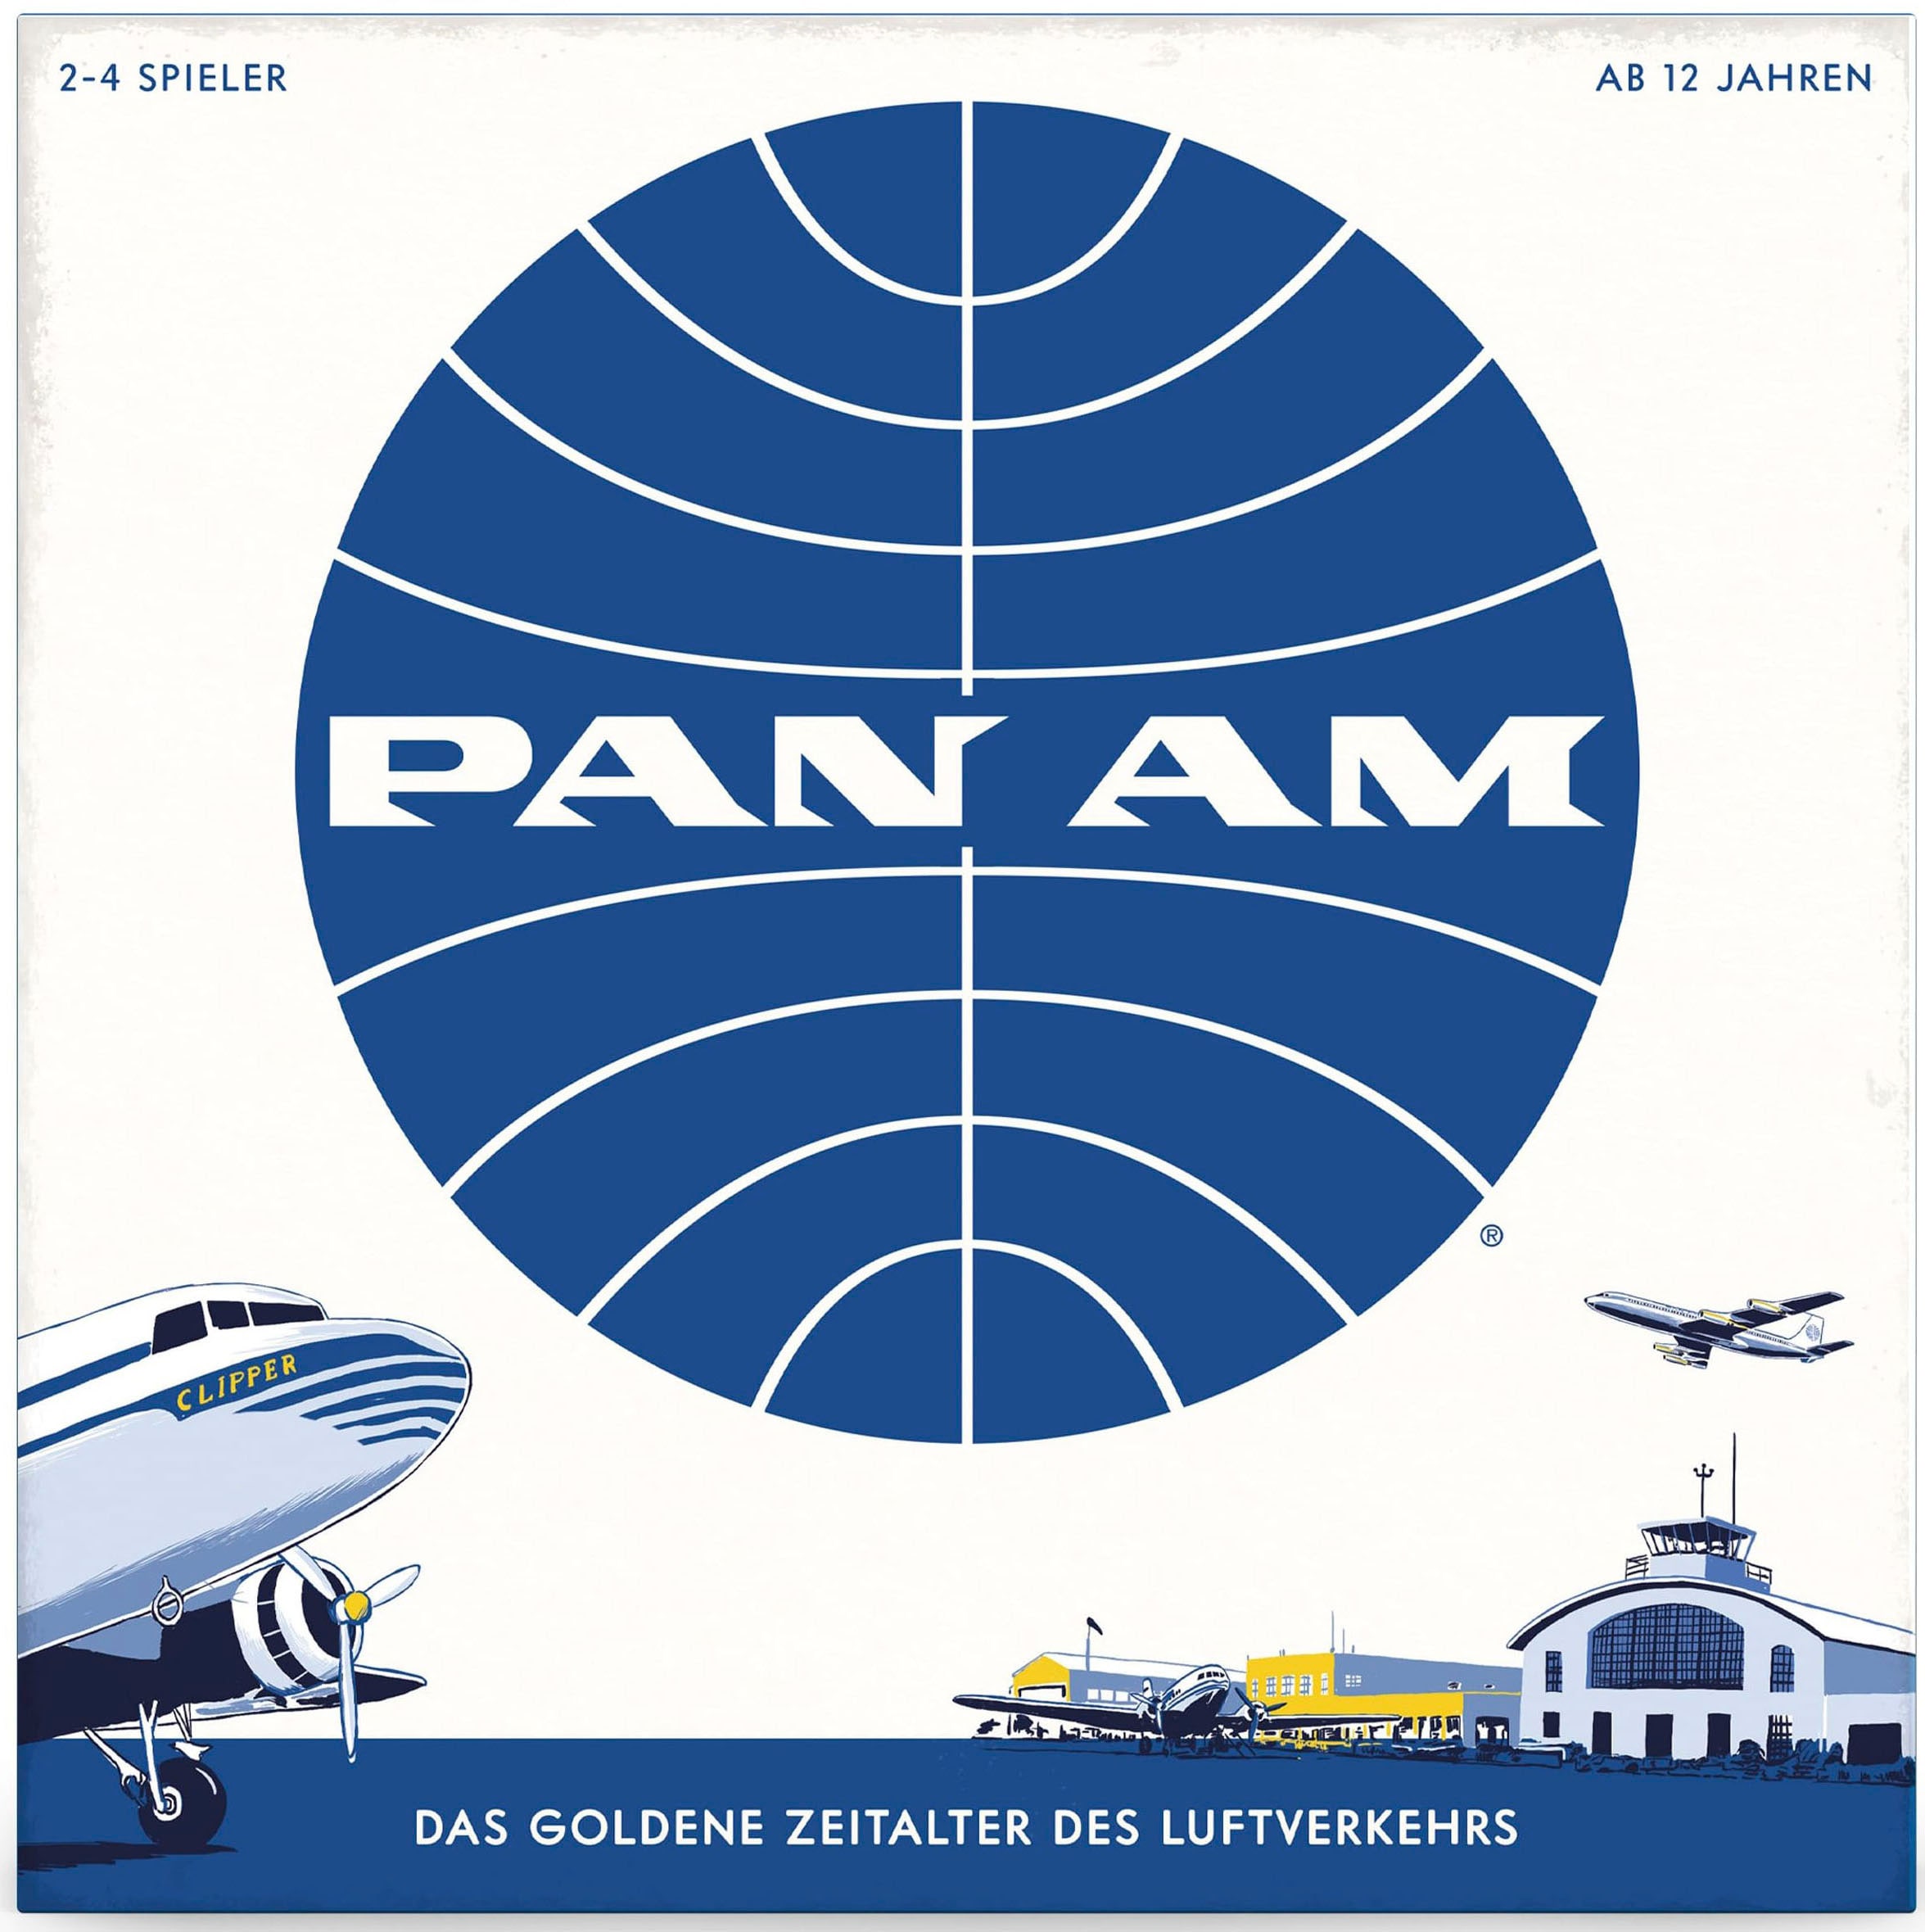 Funko GAMES Spiel »Pan Am«